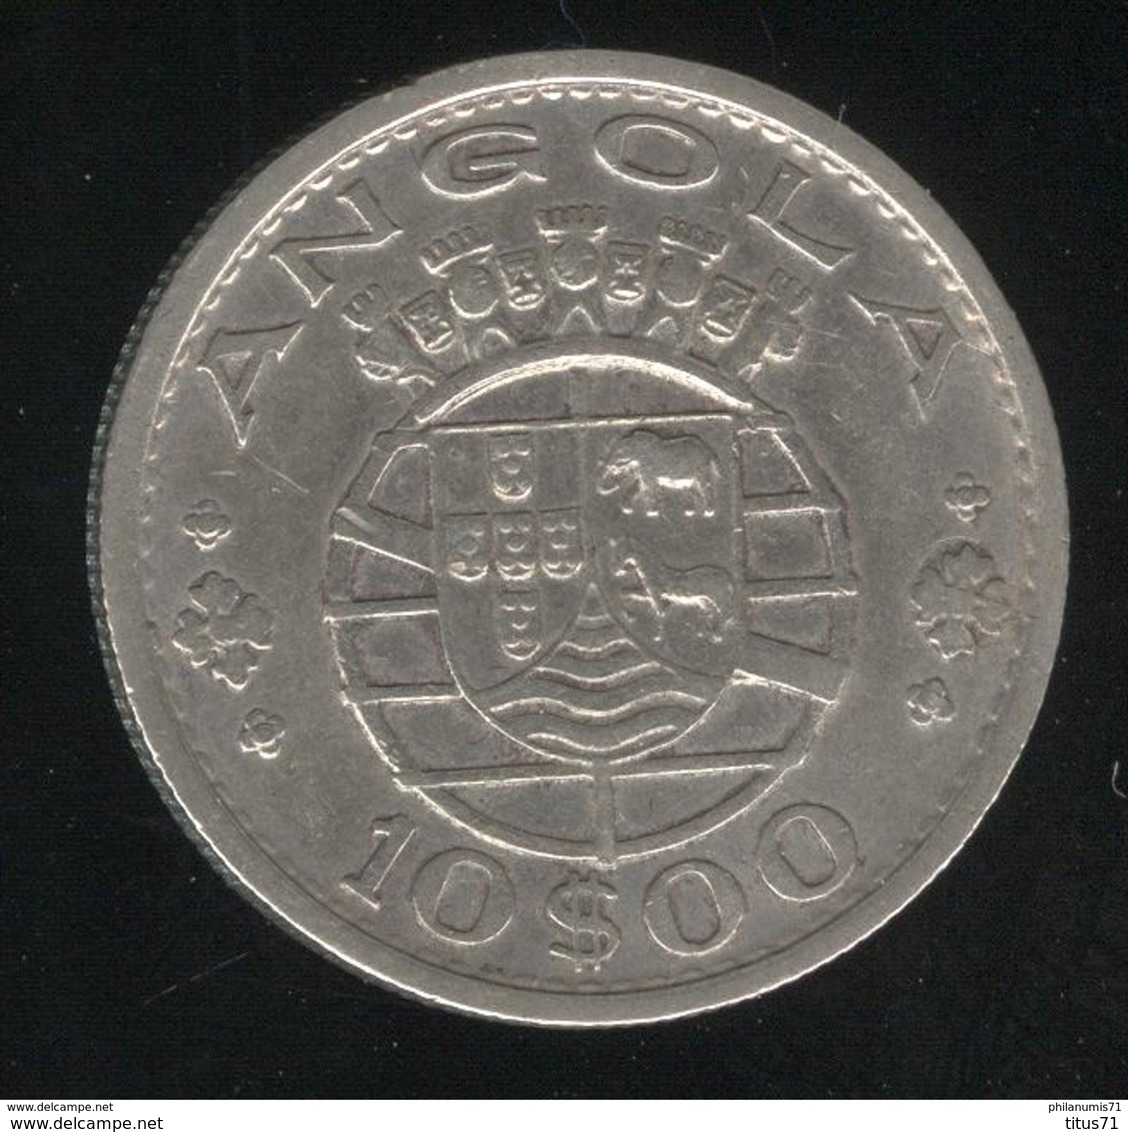 10 Escudos Angola 1952 - Colonie Portugaise / Portuguese Colony - TTB - Portugal